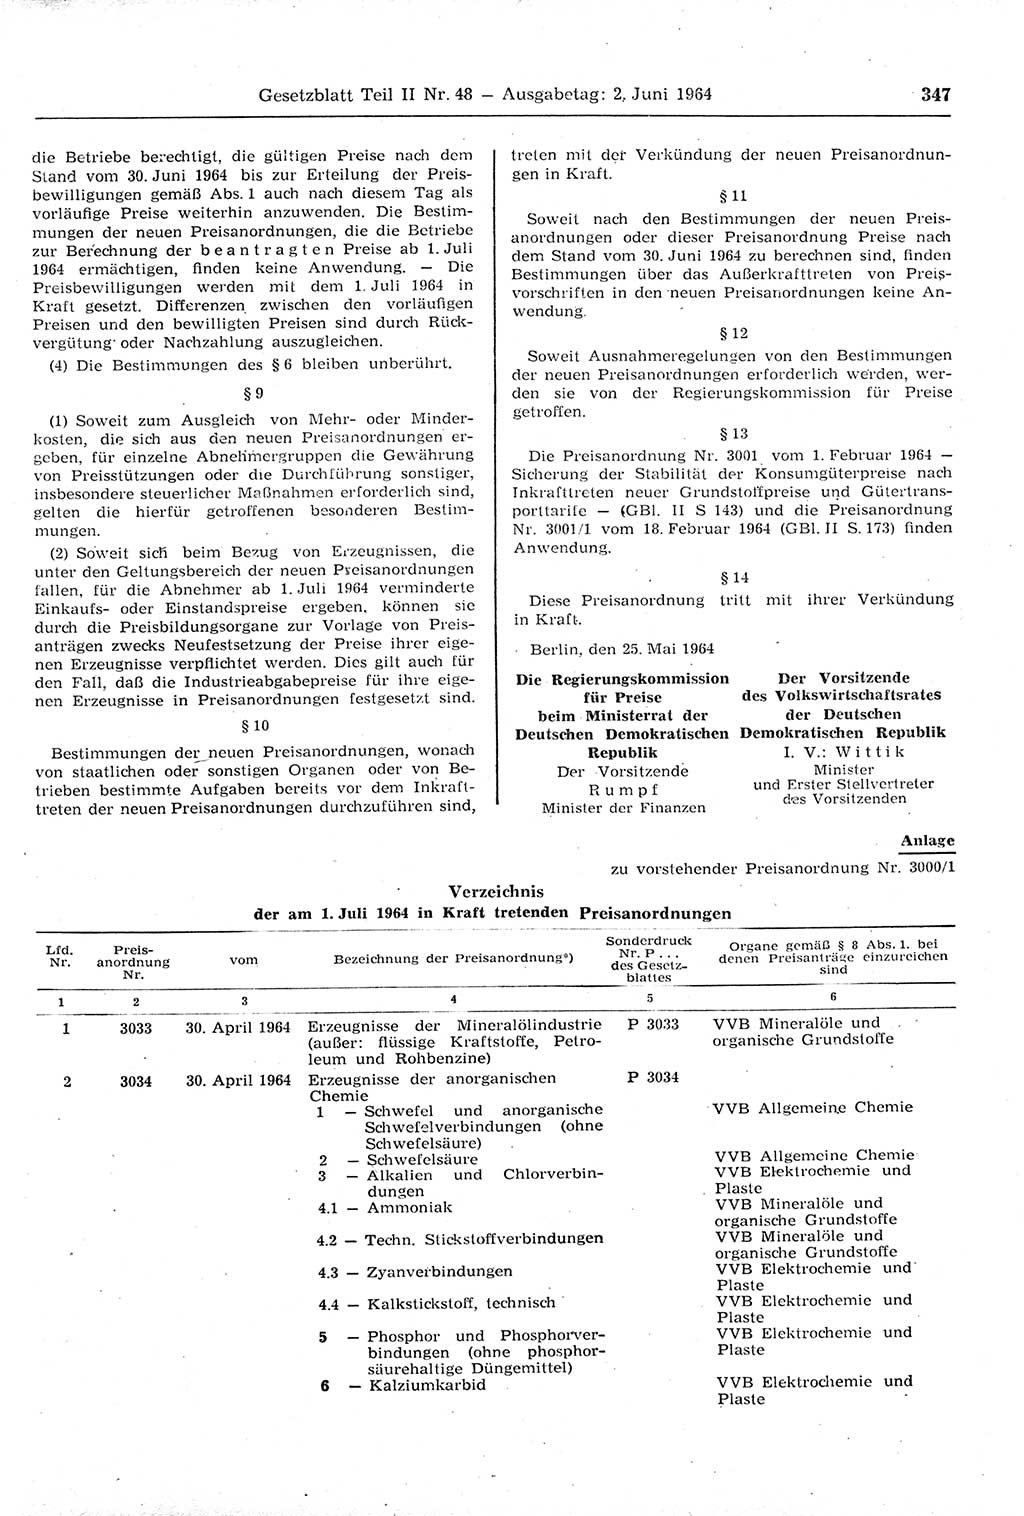 Gesetzblatt (GBl.) der Deutschen Demokratischen Republik (DDR) Teil ⅠⅠ 1964, Seite 347 (GBl. DDR ⅠⅠ 1964, S. 347)